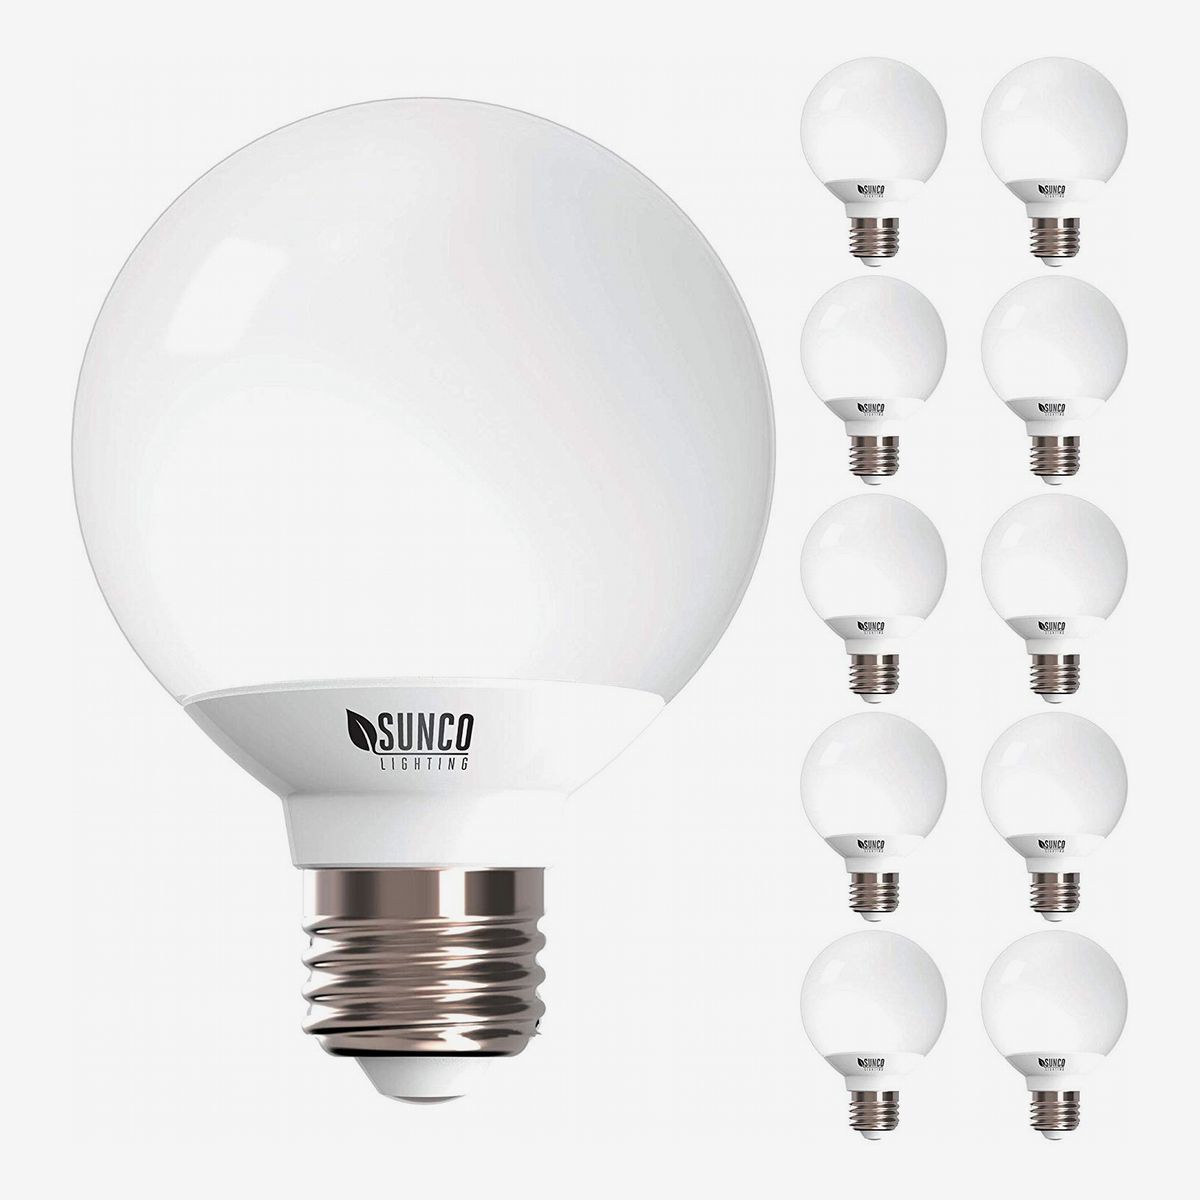 14 Best Led Light Bulbs 2020 The, Led Bathroom Light Bulbs